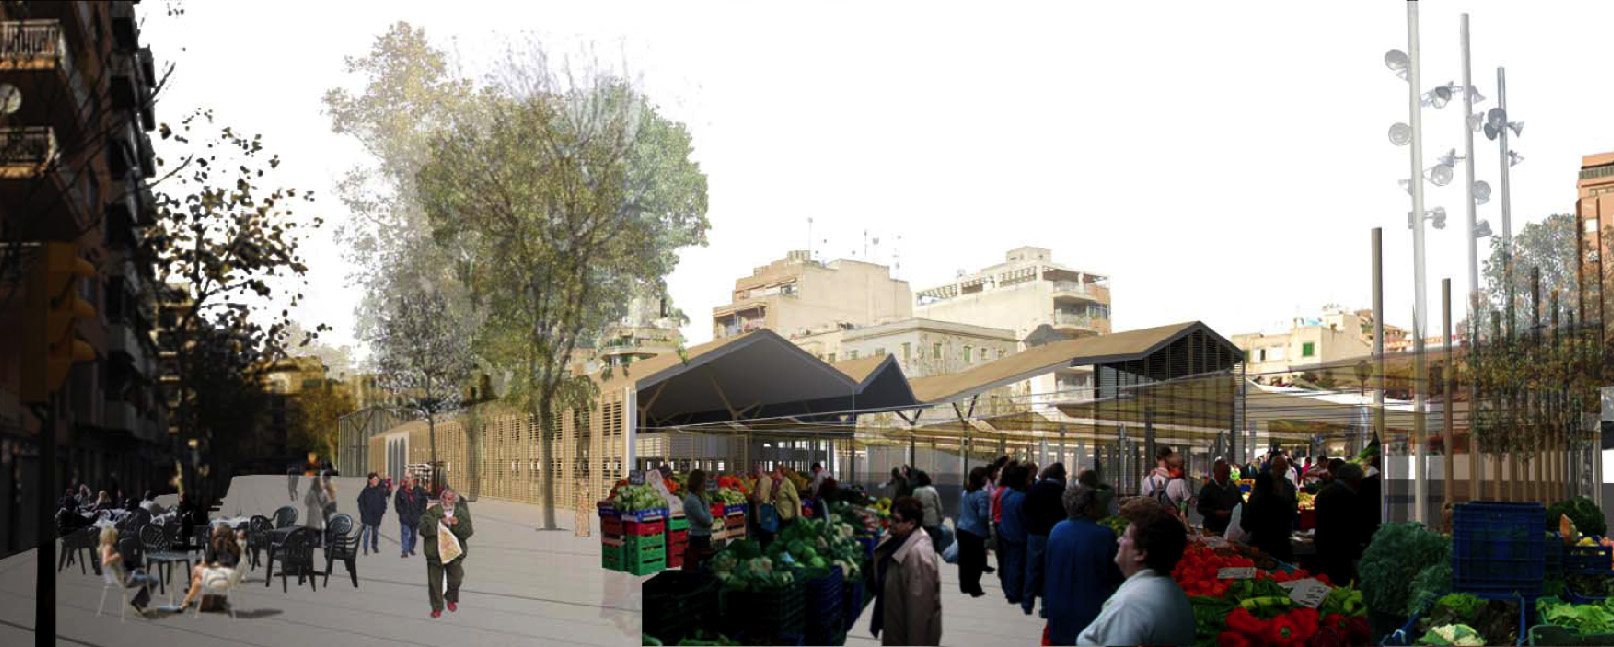 El projecte TRAVESSAR EL MERCAT, CREUAR LES PLACES guanya per unanimitat el concurs d'idees per a la remodelació de la plaça i el Mercat Municipal de Pere Garau i del seu entorn